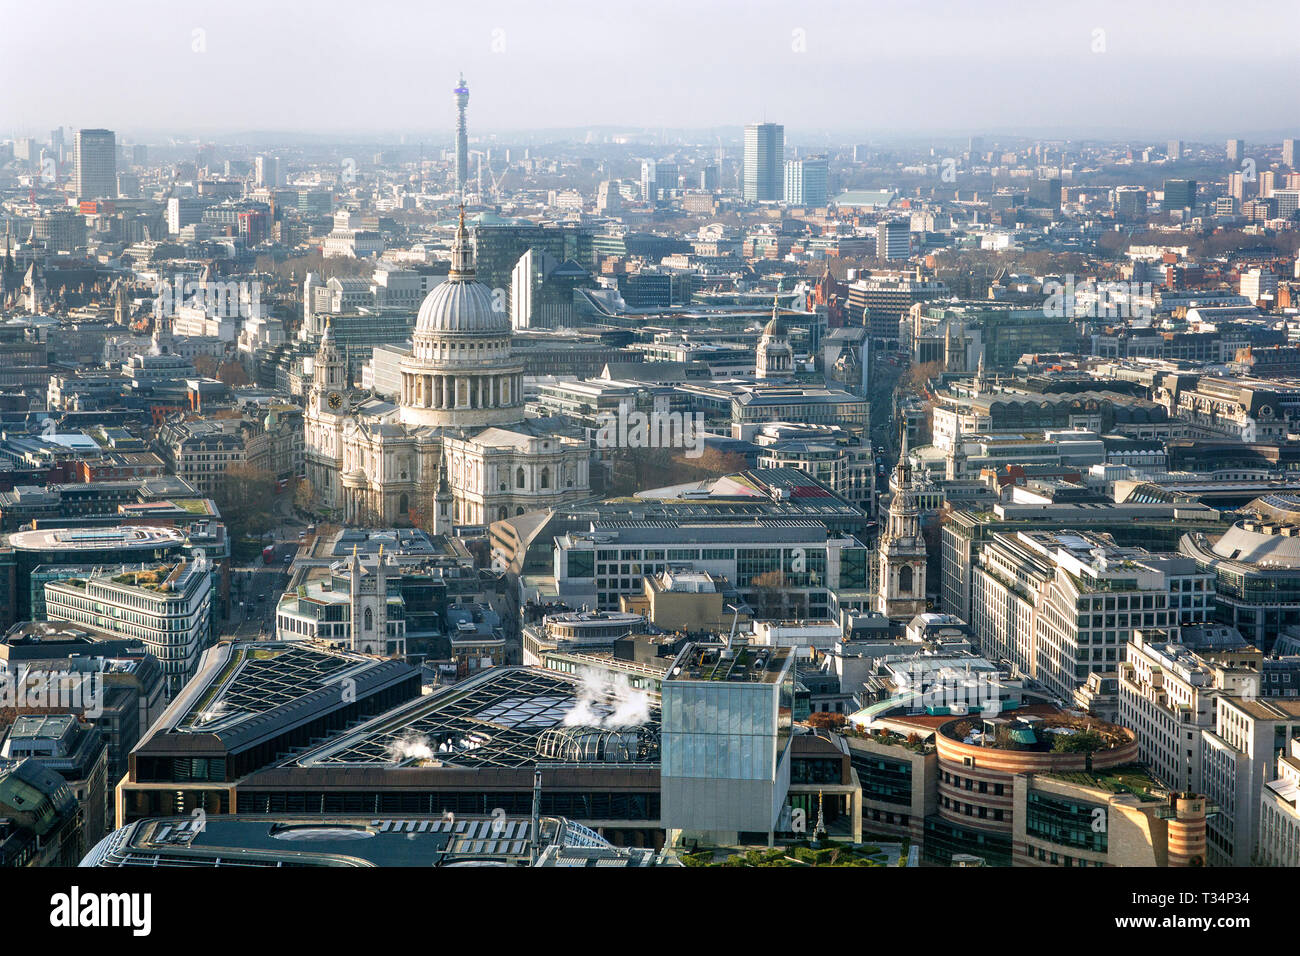 Vue urbaine avec la Cathédrale St Paul, Londres, Angleterre, Royaume-Uni Banque D'Images